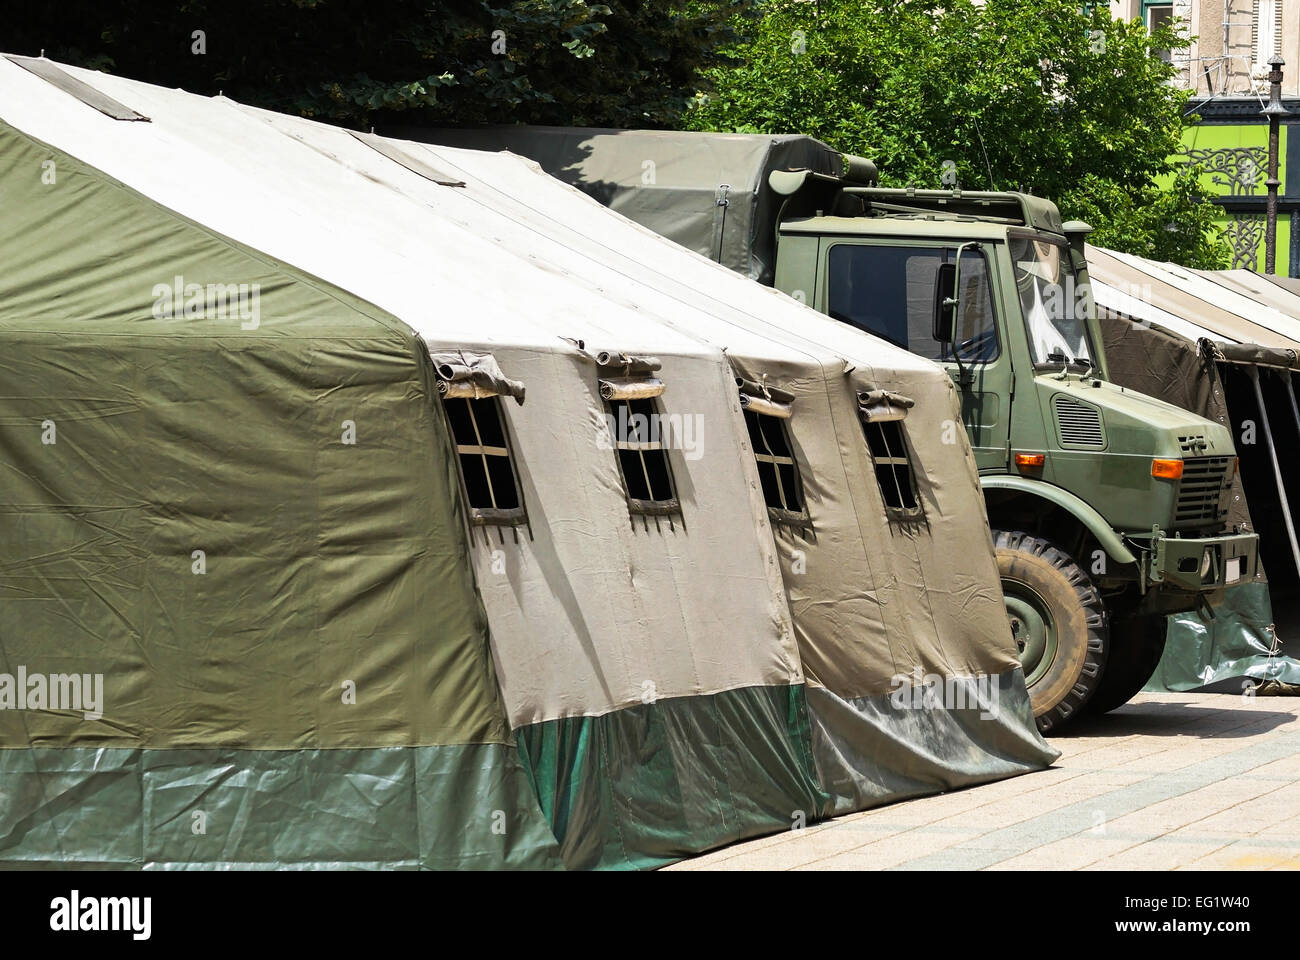 Grande tenda militare e camion militare Foto Stock